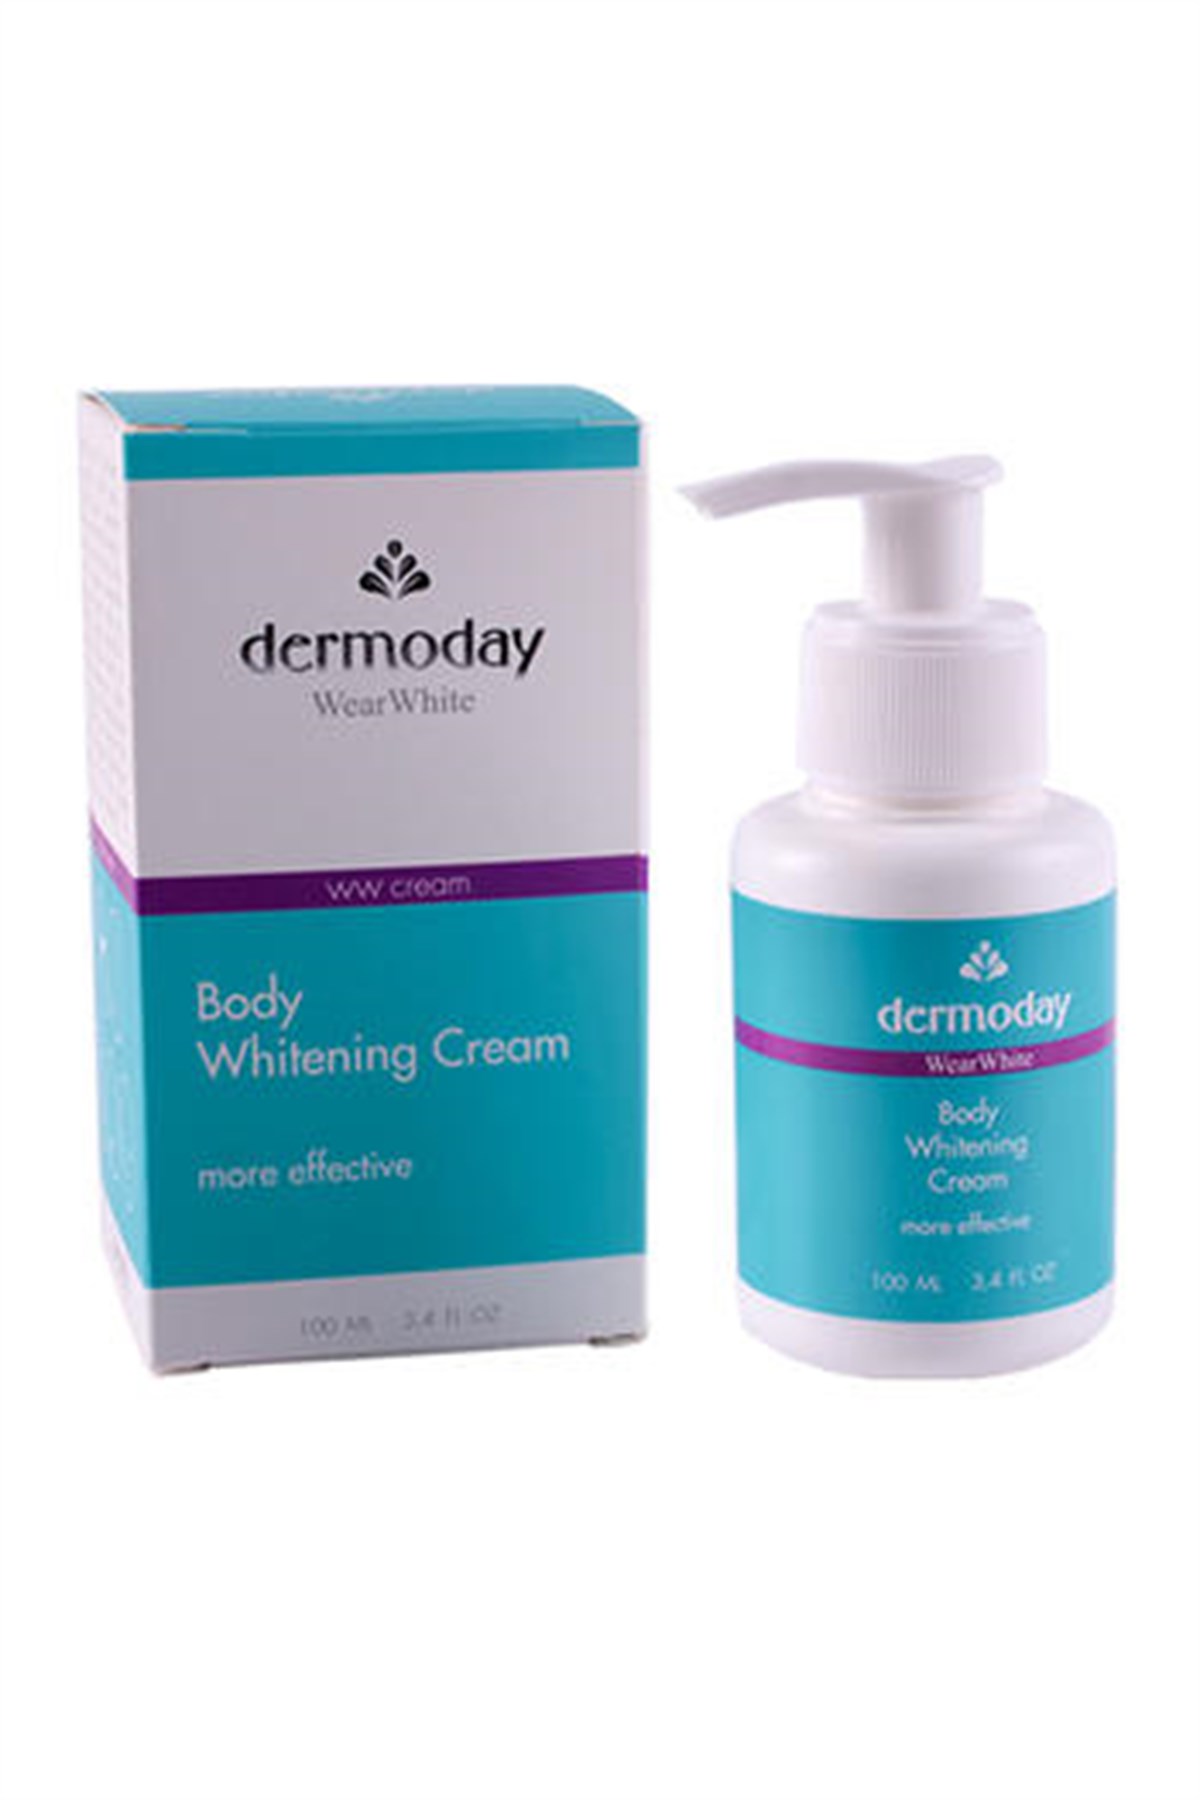 Dermoday Wear White WW Cream Body Whitening 100 ML | Ehersey.com